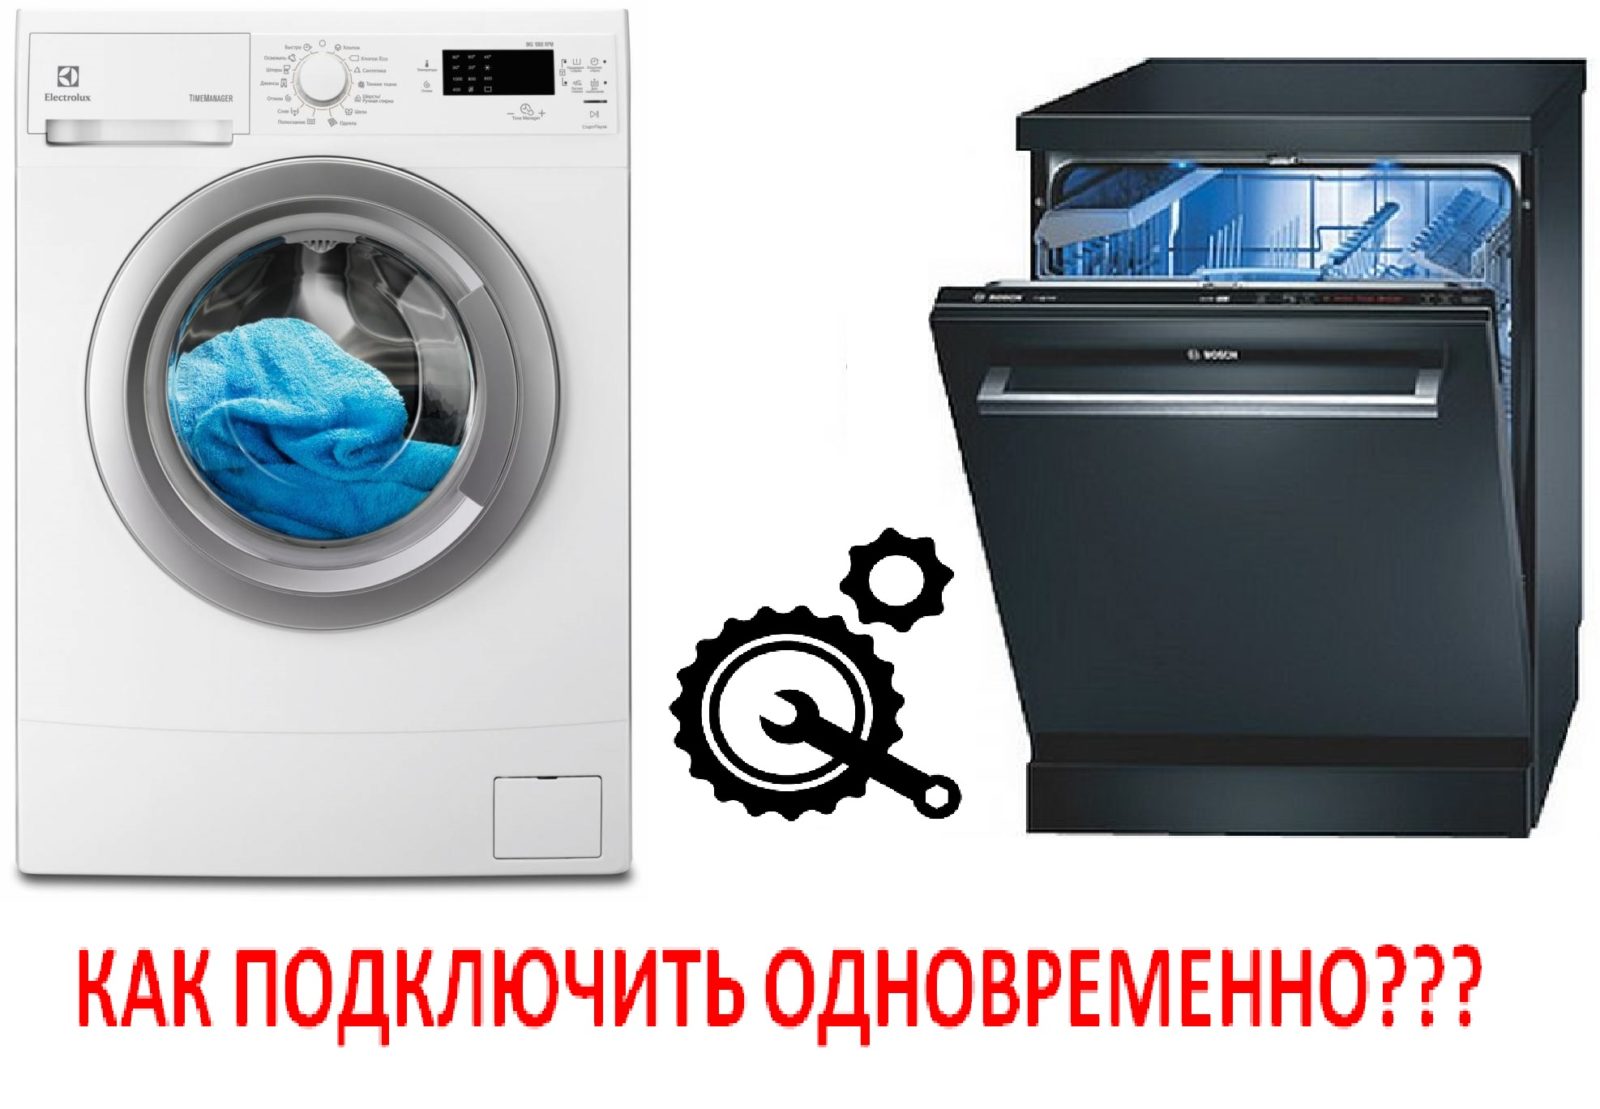 เชื่อมต่อเครื่องซักผ้าและเครื่องล้างจาน